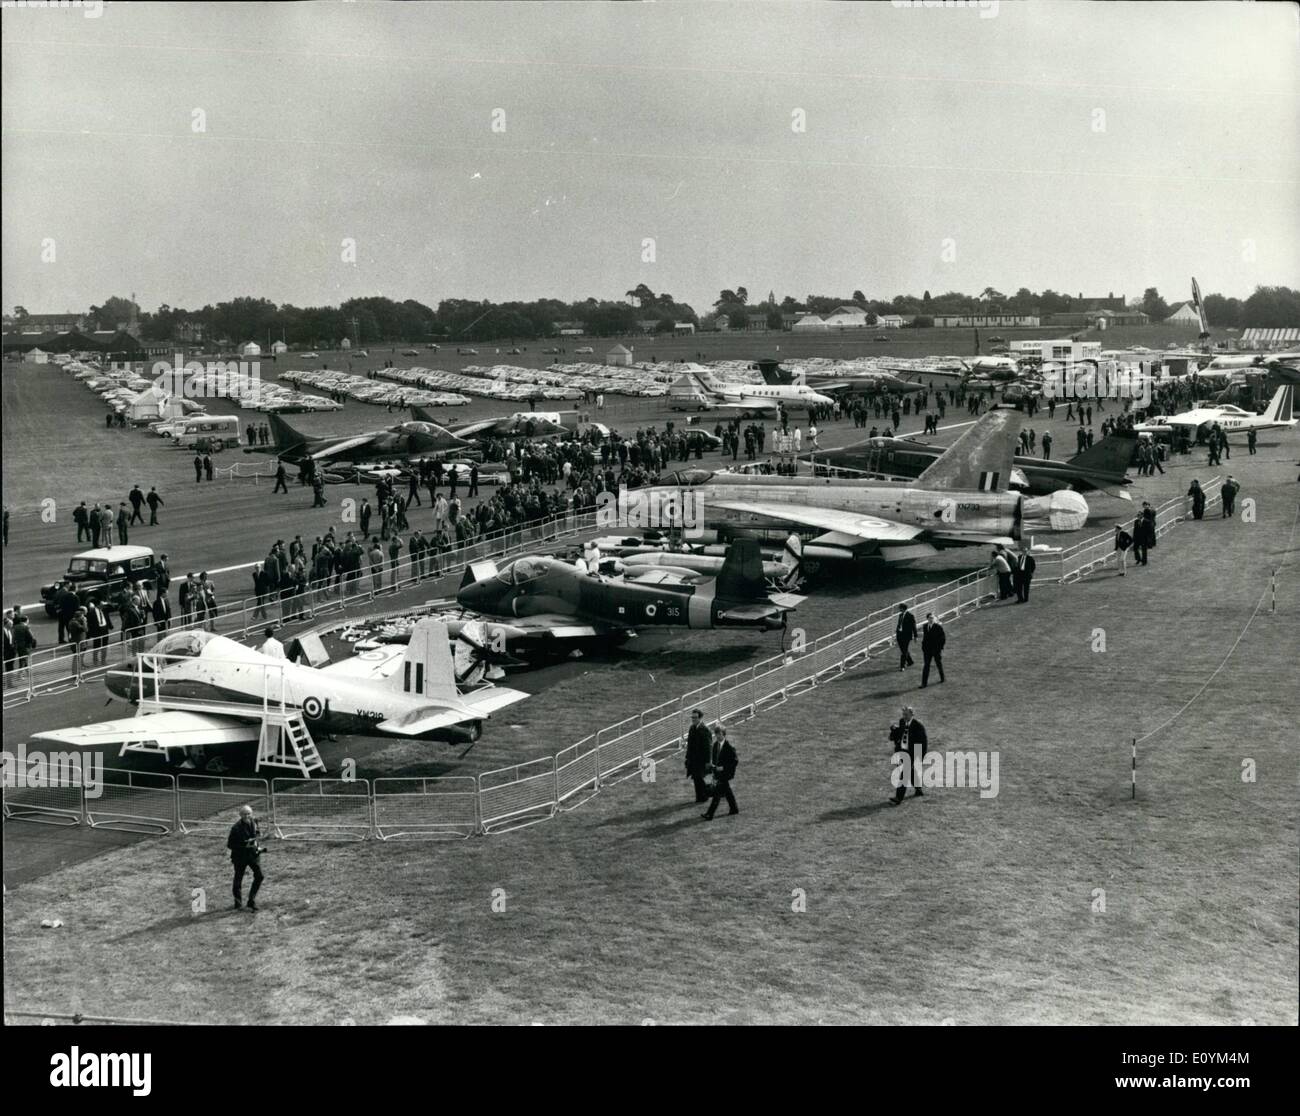 Septembre 09, 1970 - Farnborough Air Show. Aujourd'hui, c'est appuyer sur jour de la Farnborough Air Show - et cette vue a été prise aujourd'hui à partir d'un hélicoptère. Banque D'Images